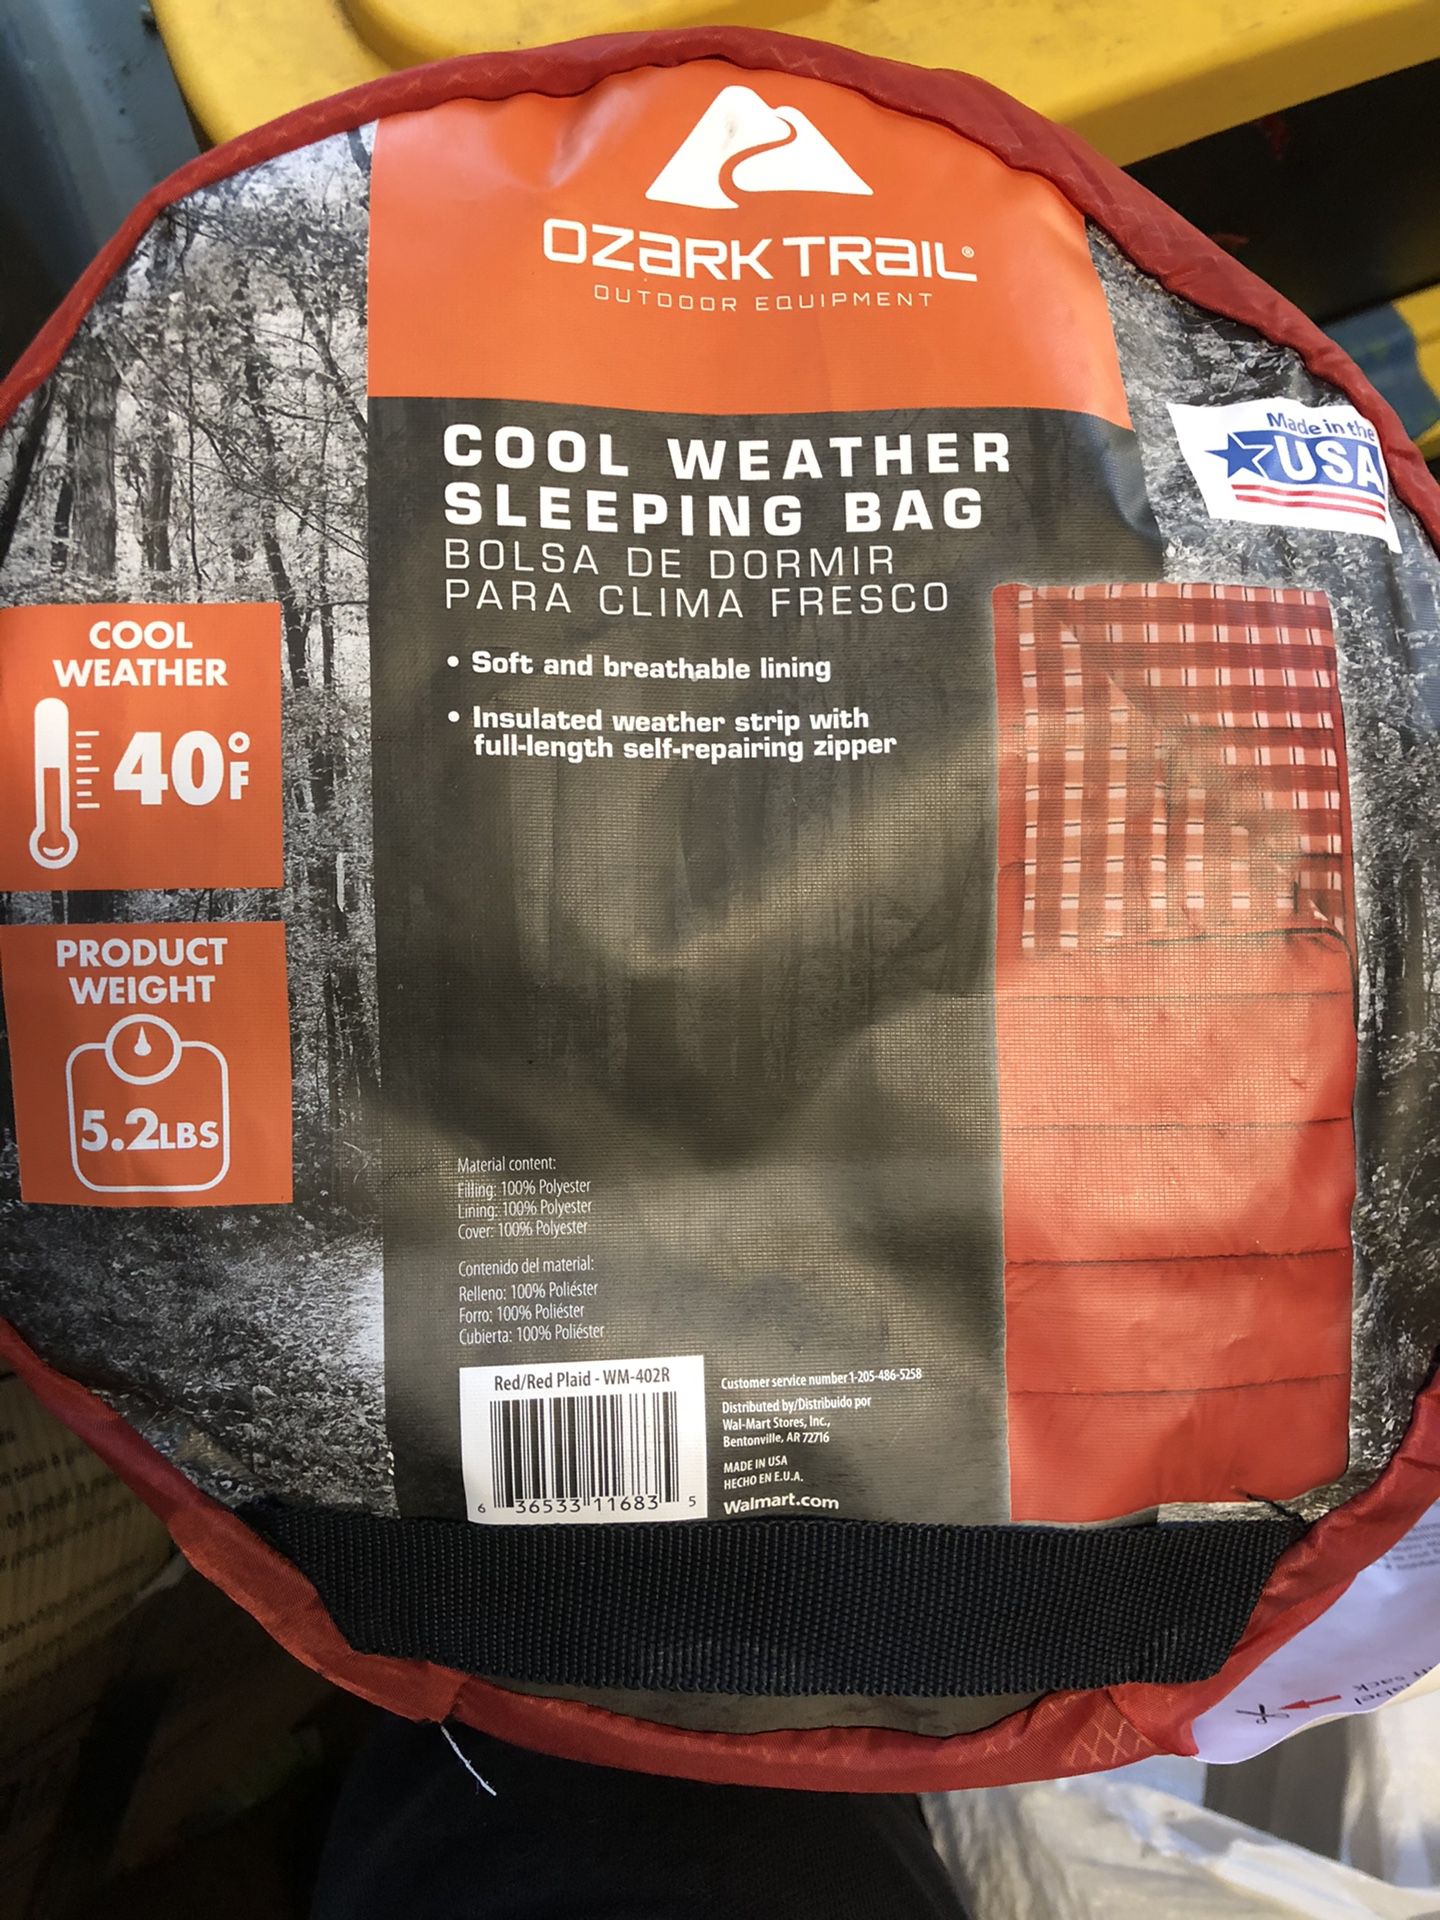 Camping - Sleeping Bags $10/each